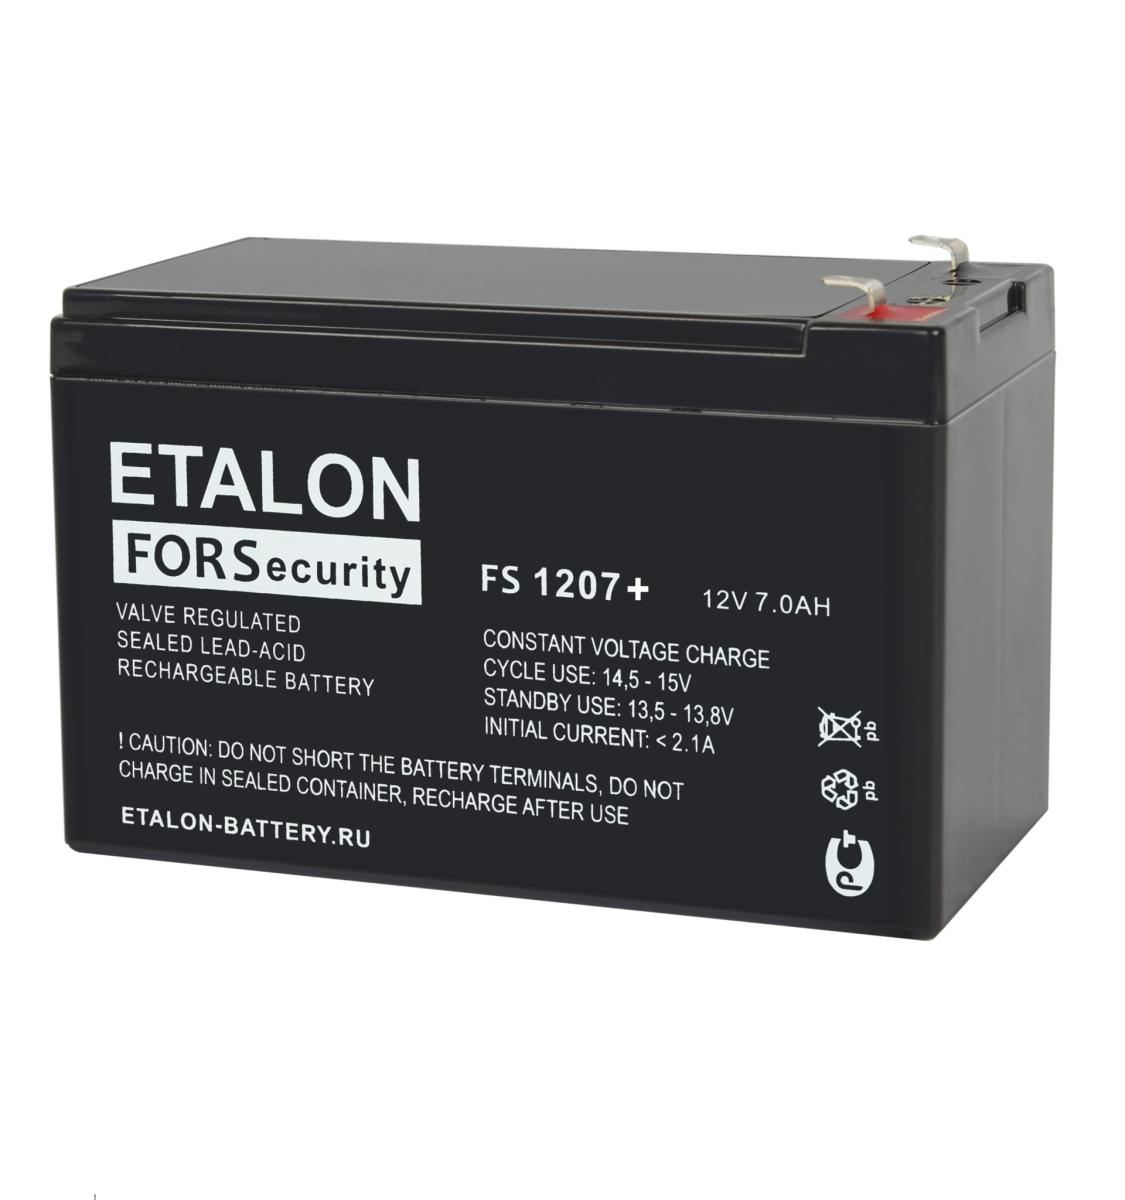 ETALON FS 1207+ Аккумулятор герметичный свинцово-кислотный